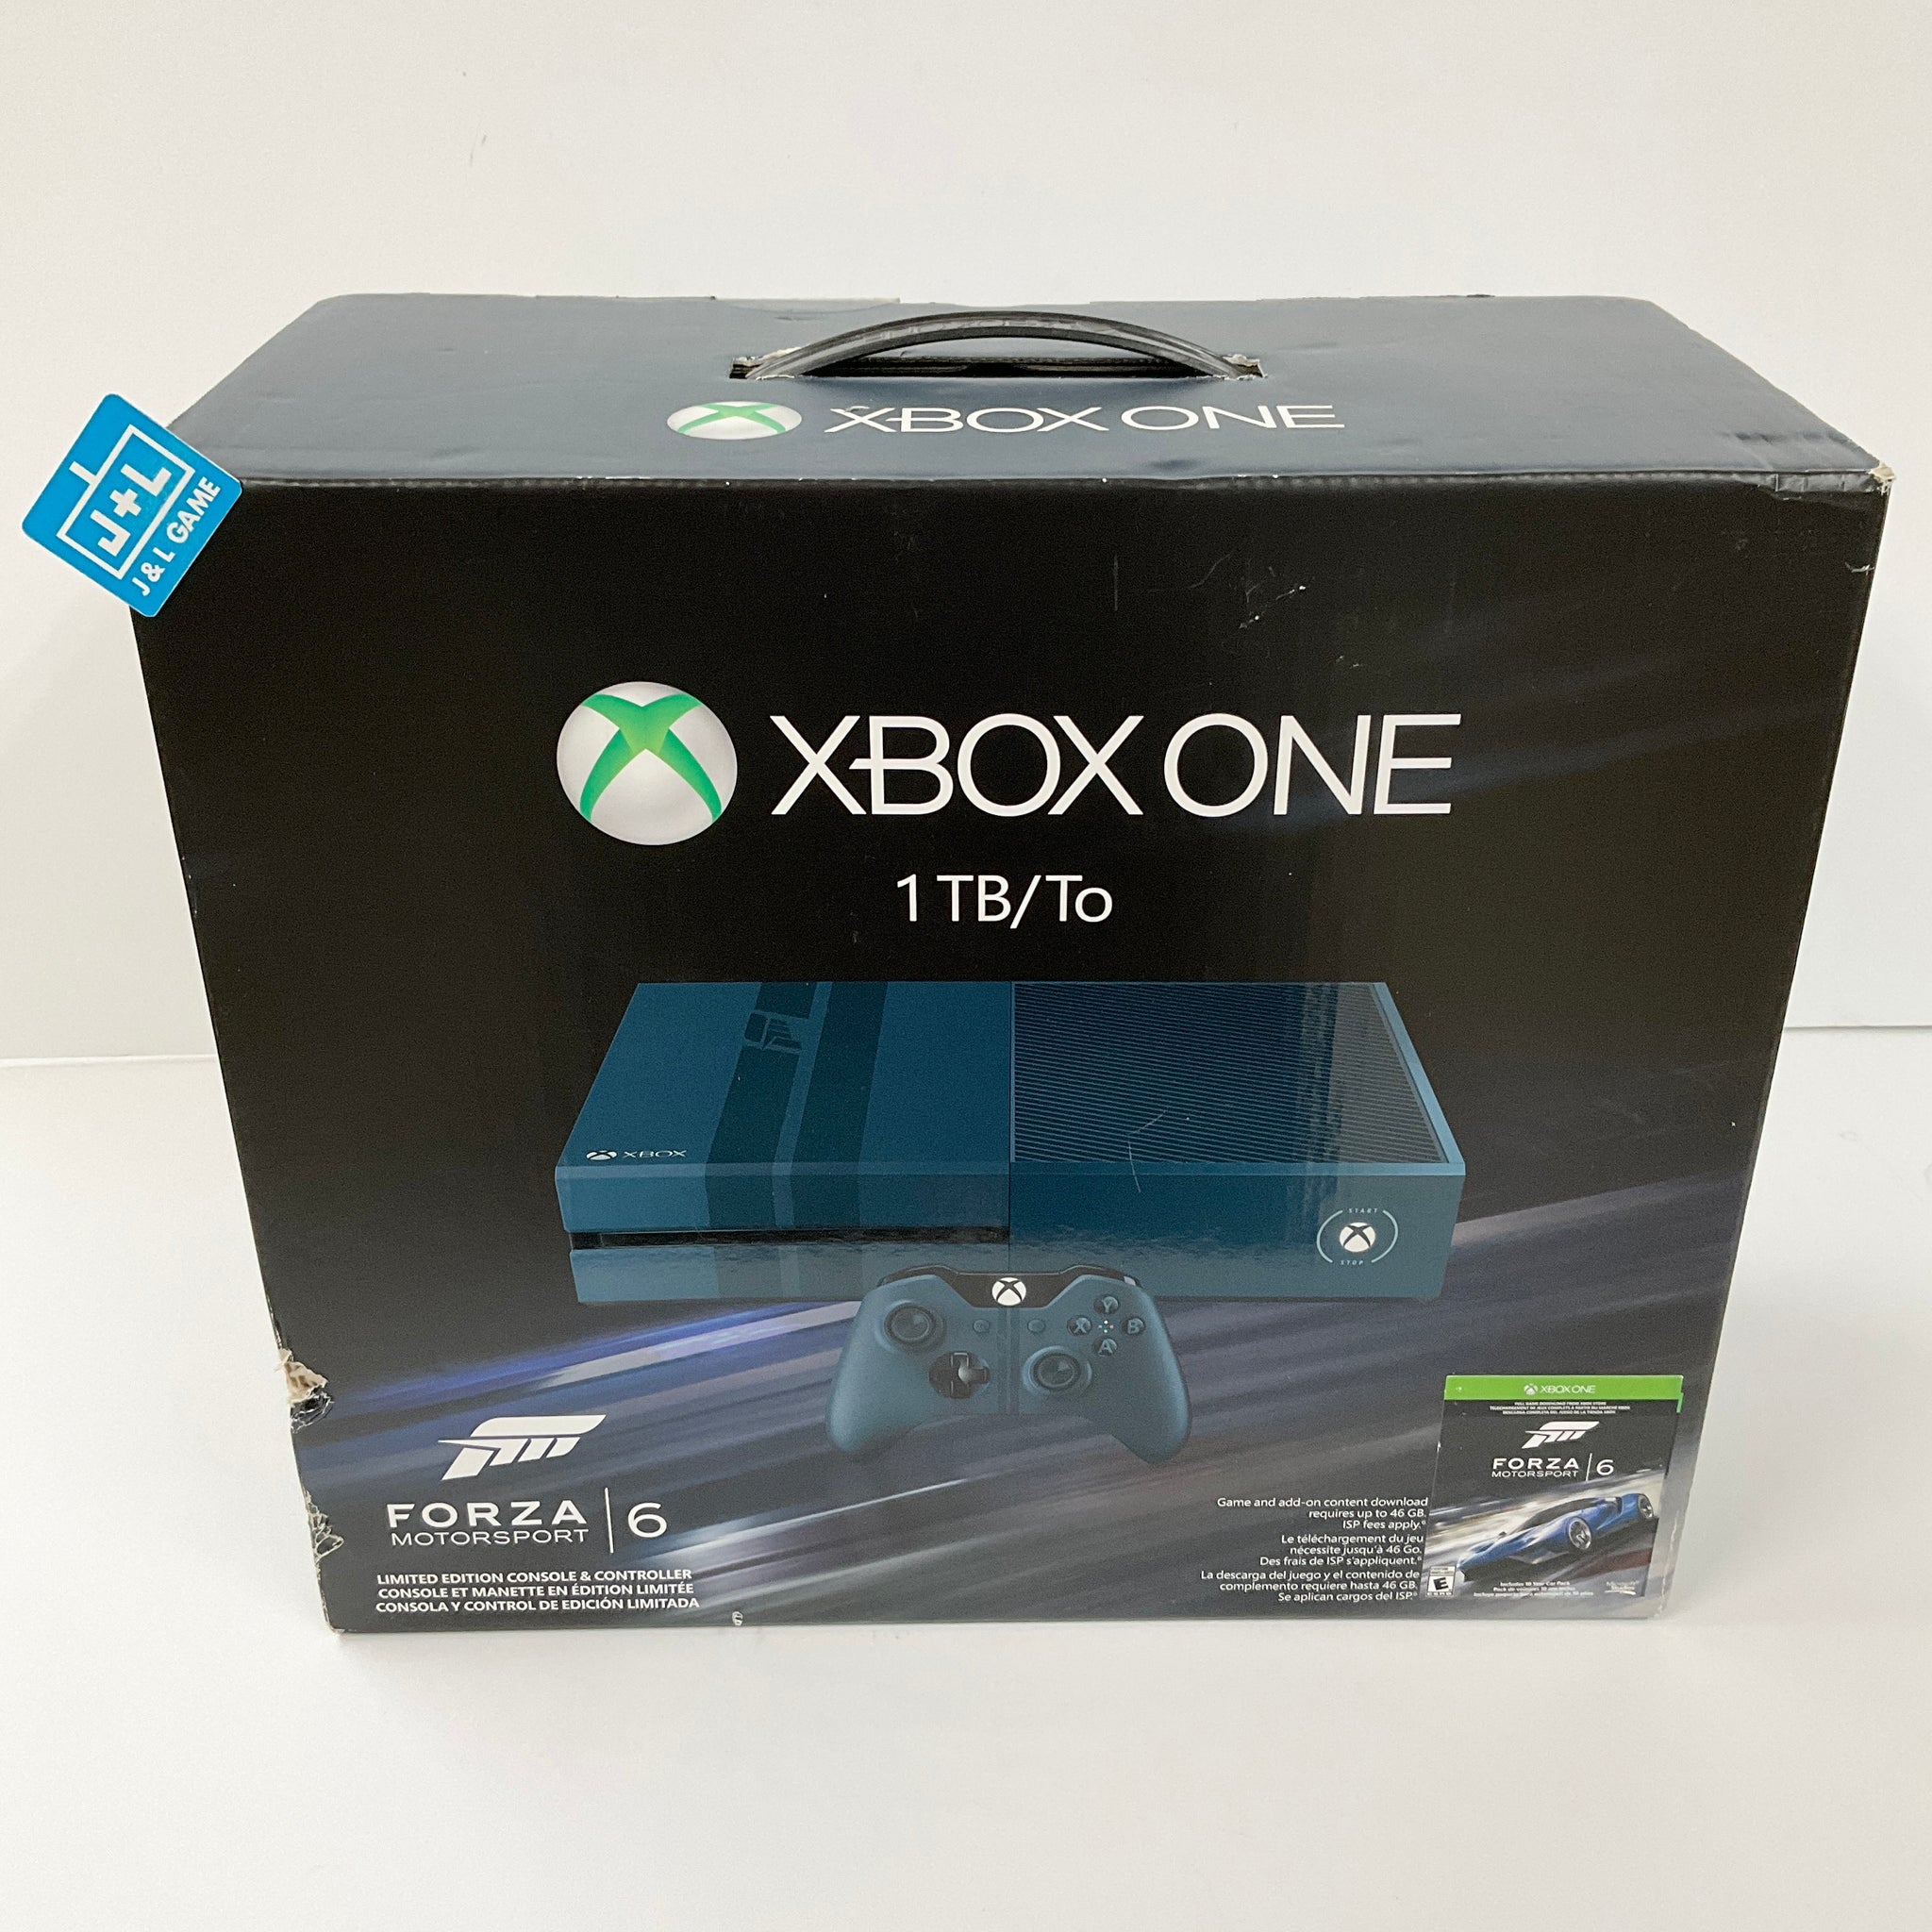 Forza Motorsport 6 - Xbox One, Xbox One